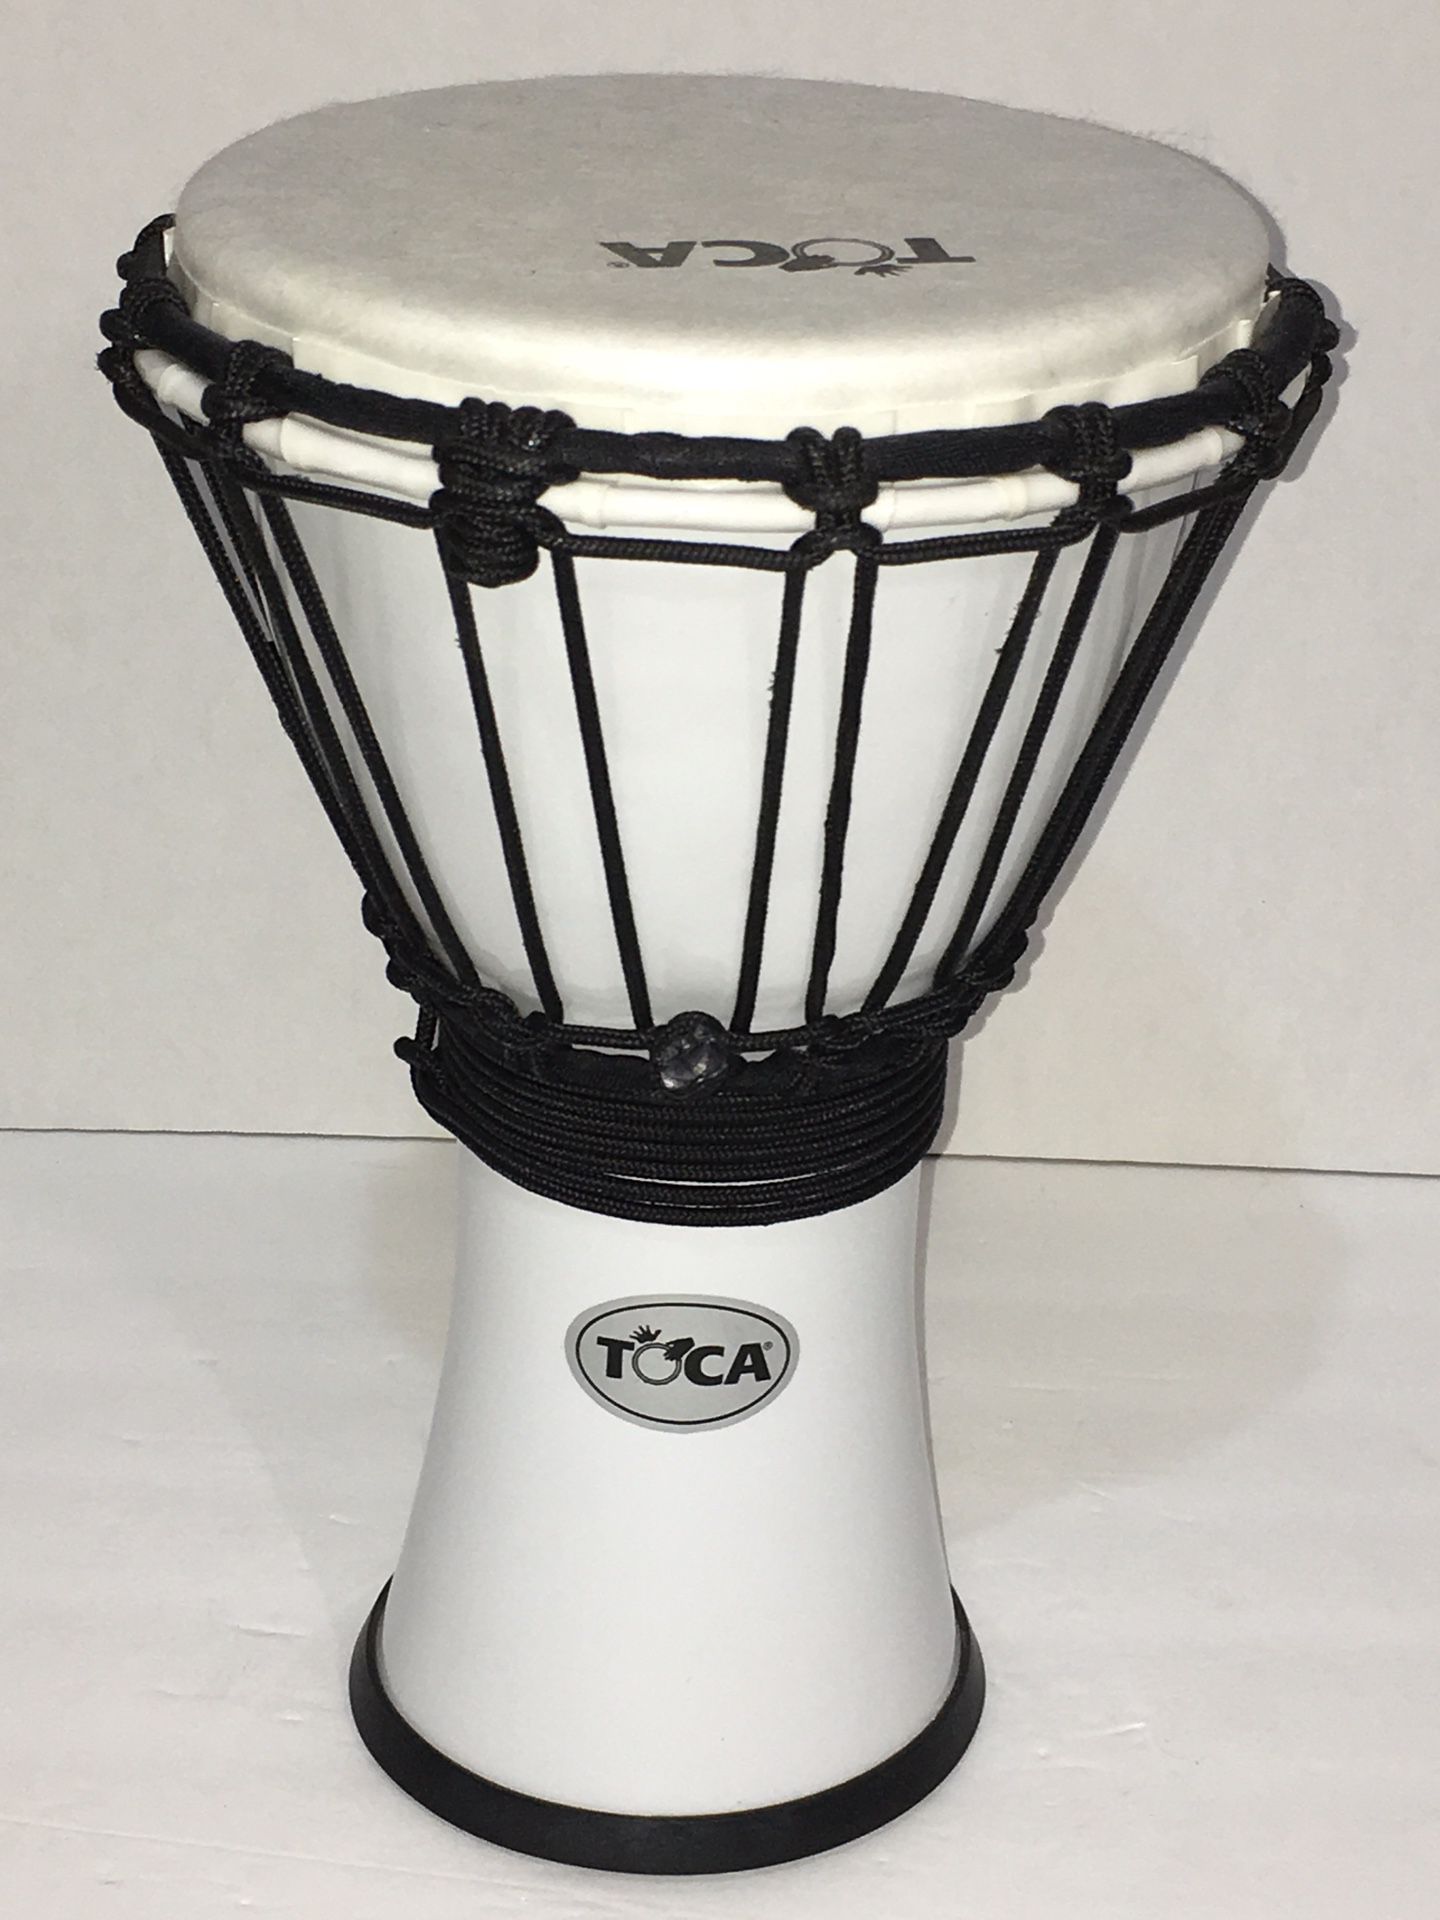 TOCA Percussion Mini Djembe Hand Drum. 12.5” Tall. 7” Diameter Head